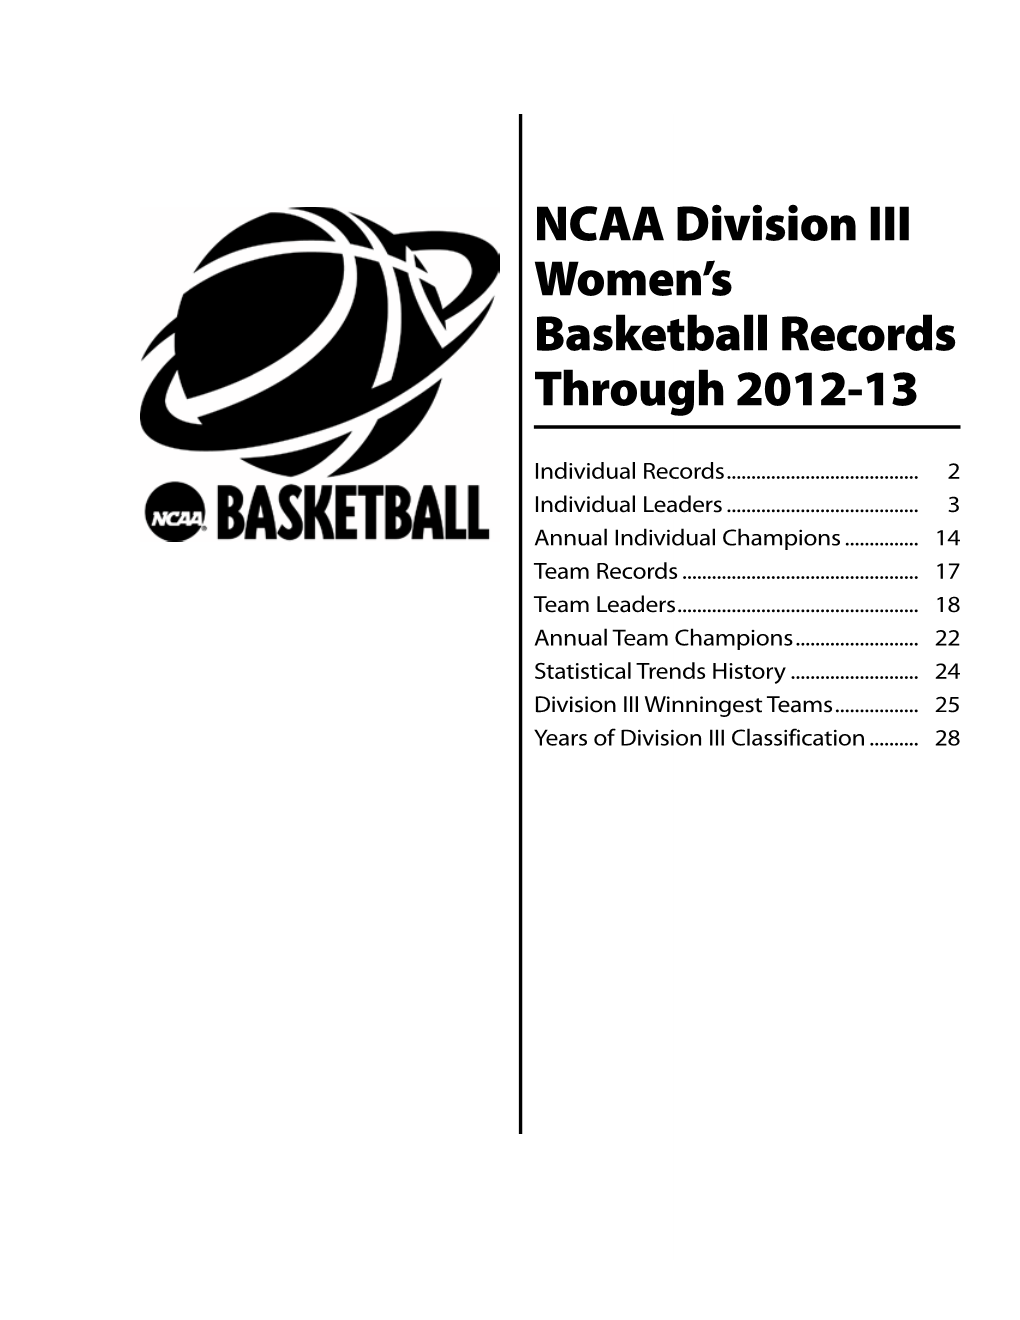 NCAA Division III Women's Basketball Records Through 2012-13